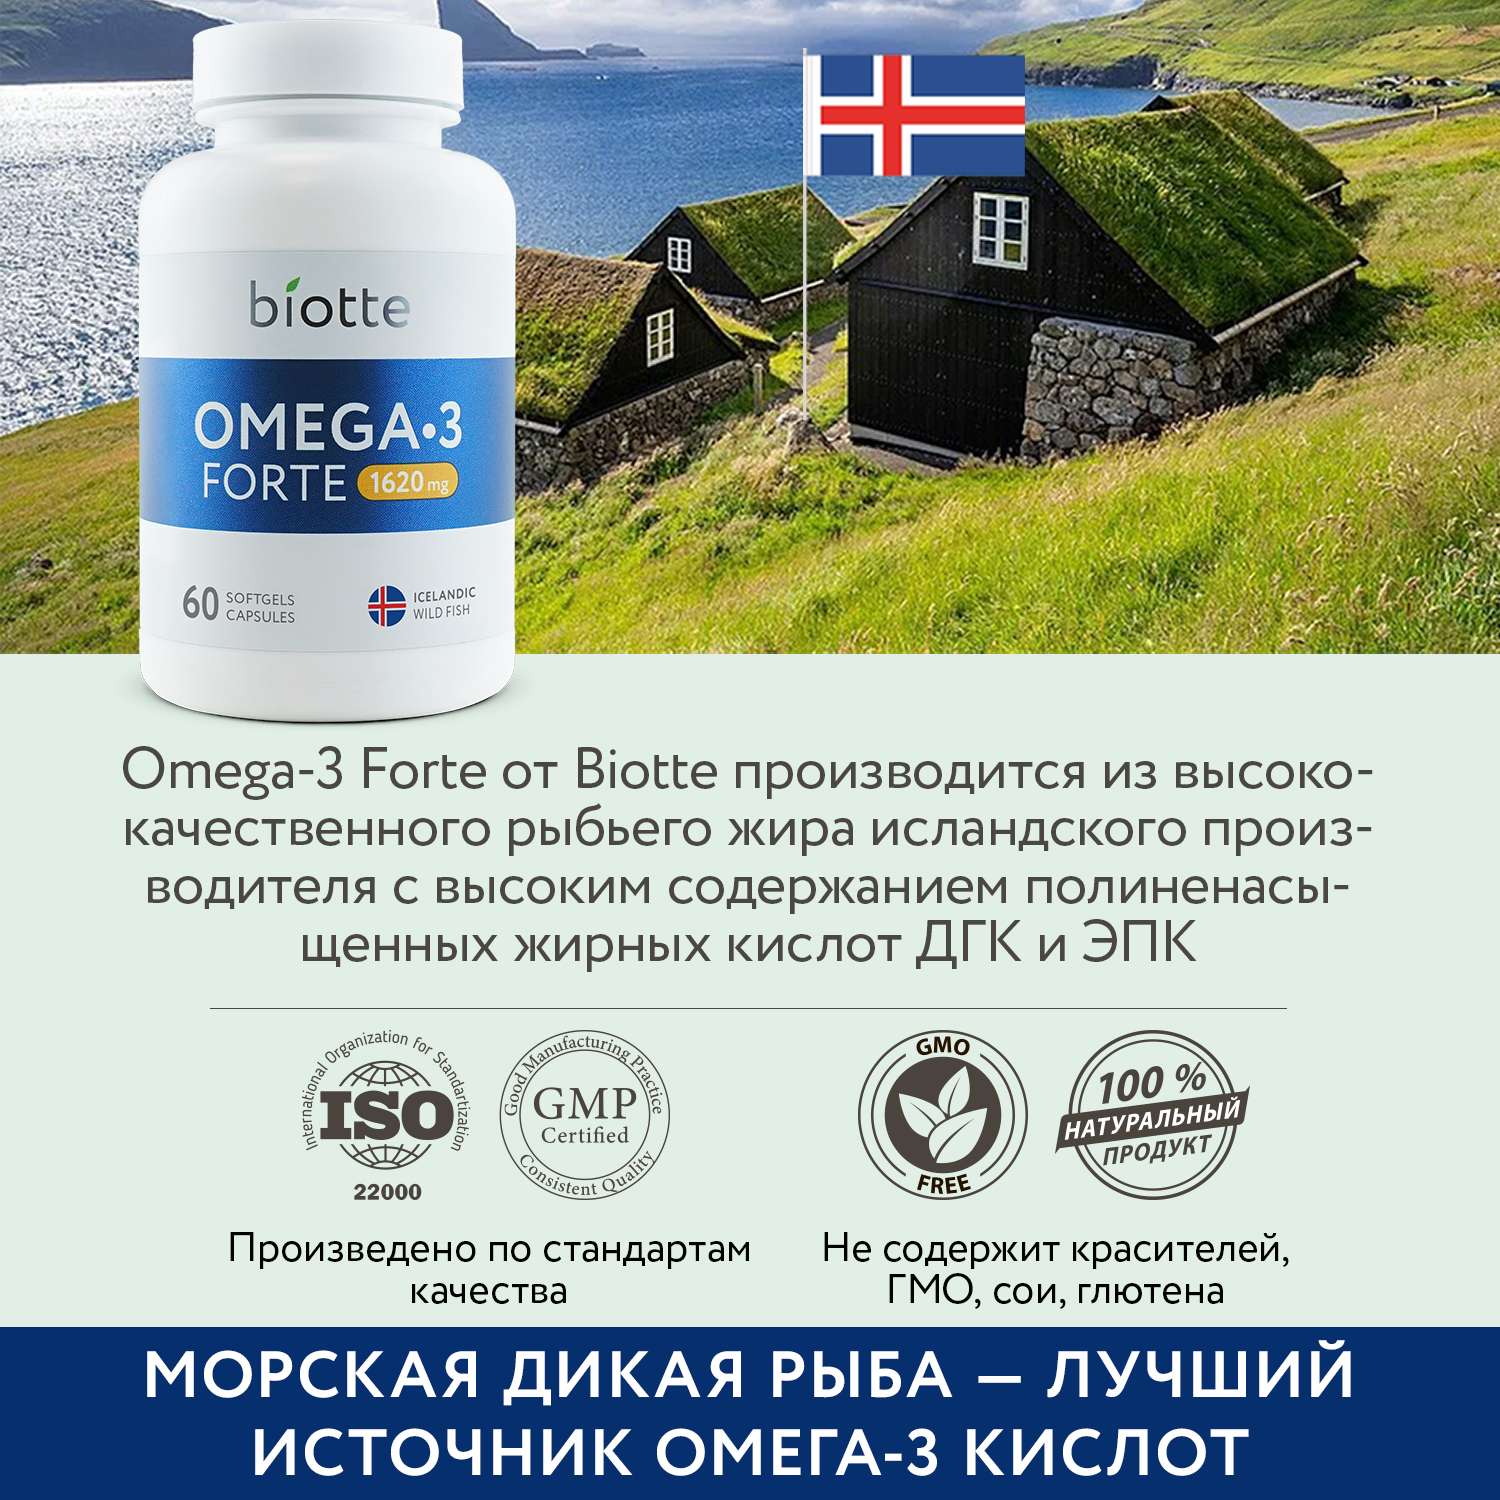 Омега 3 форте в капсулах BIOTTE omega forte 1620 mg fish oil премиальный рыбий жир БАД для взрослых и подростков 60 капсул - фото 7